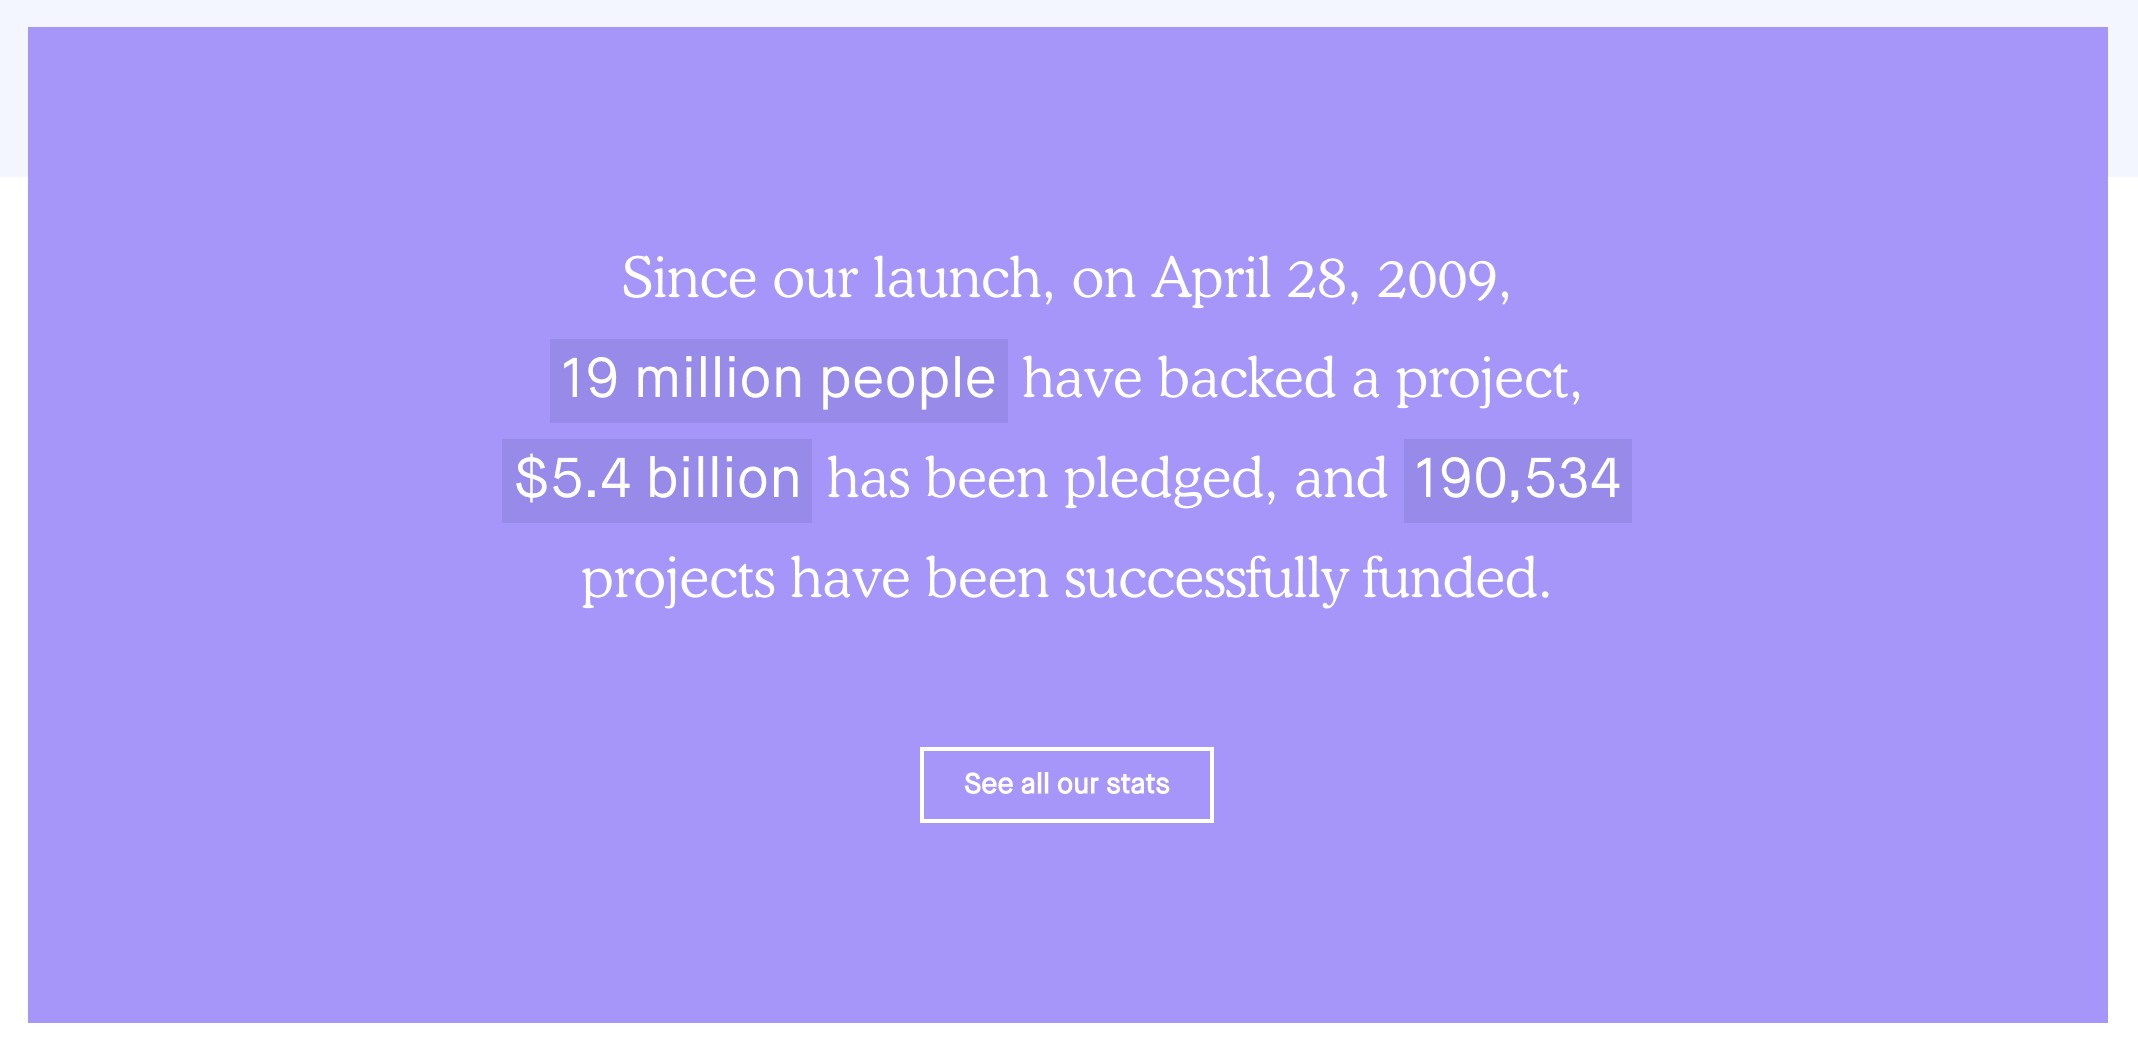 Kickstarter's media kit social media statistics